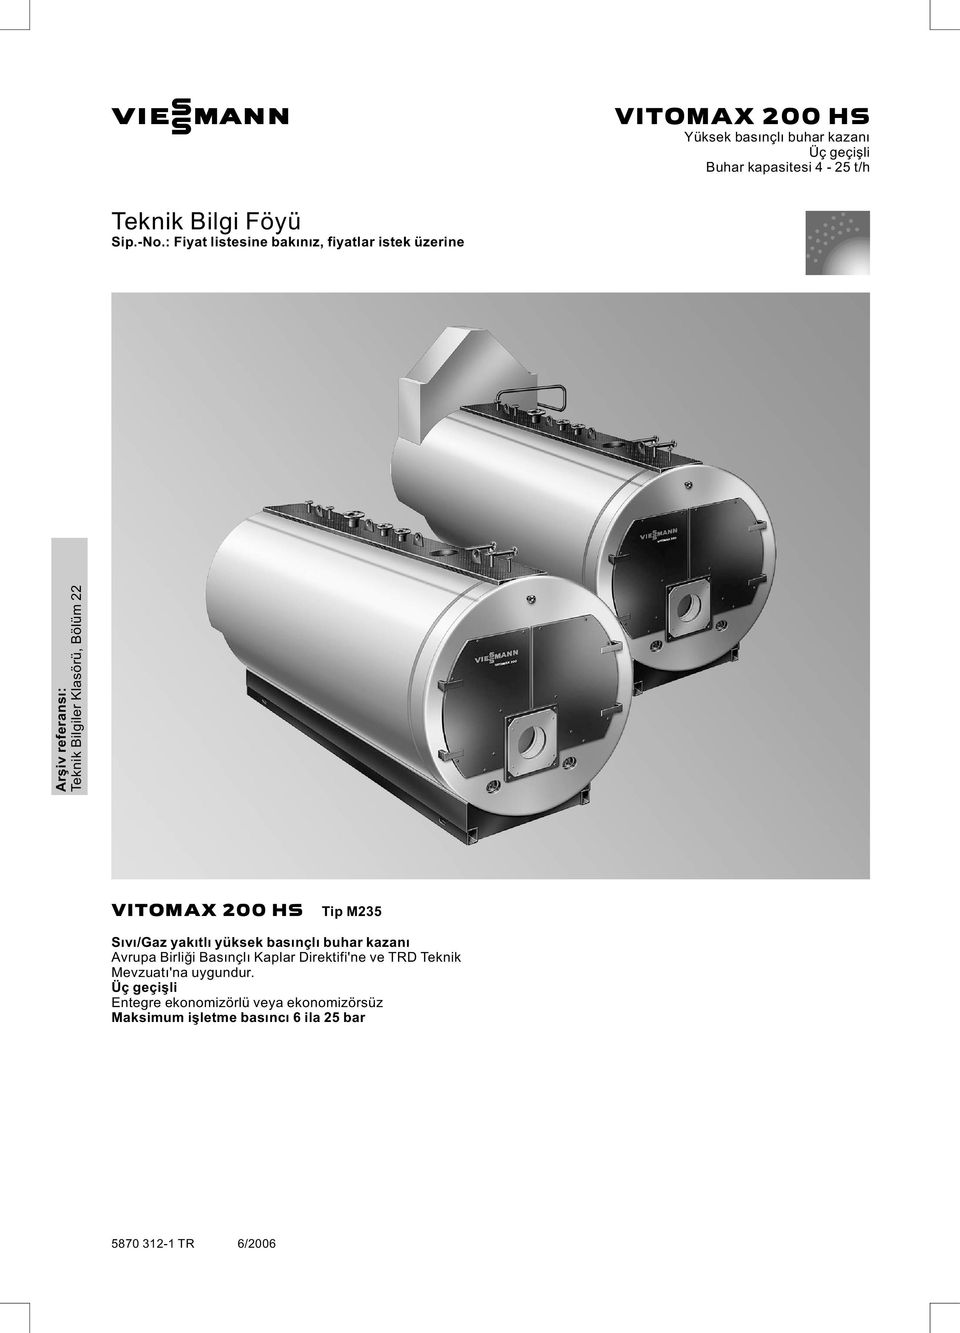 Tip M235 Sıvı/Gaz yakıtlı yüksek basınçlı buhar kazanı Avrupa Birliği Basınçlı Kaplar Direktifi'ne ve TRD Teknik